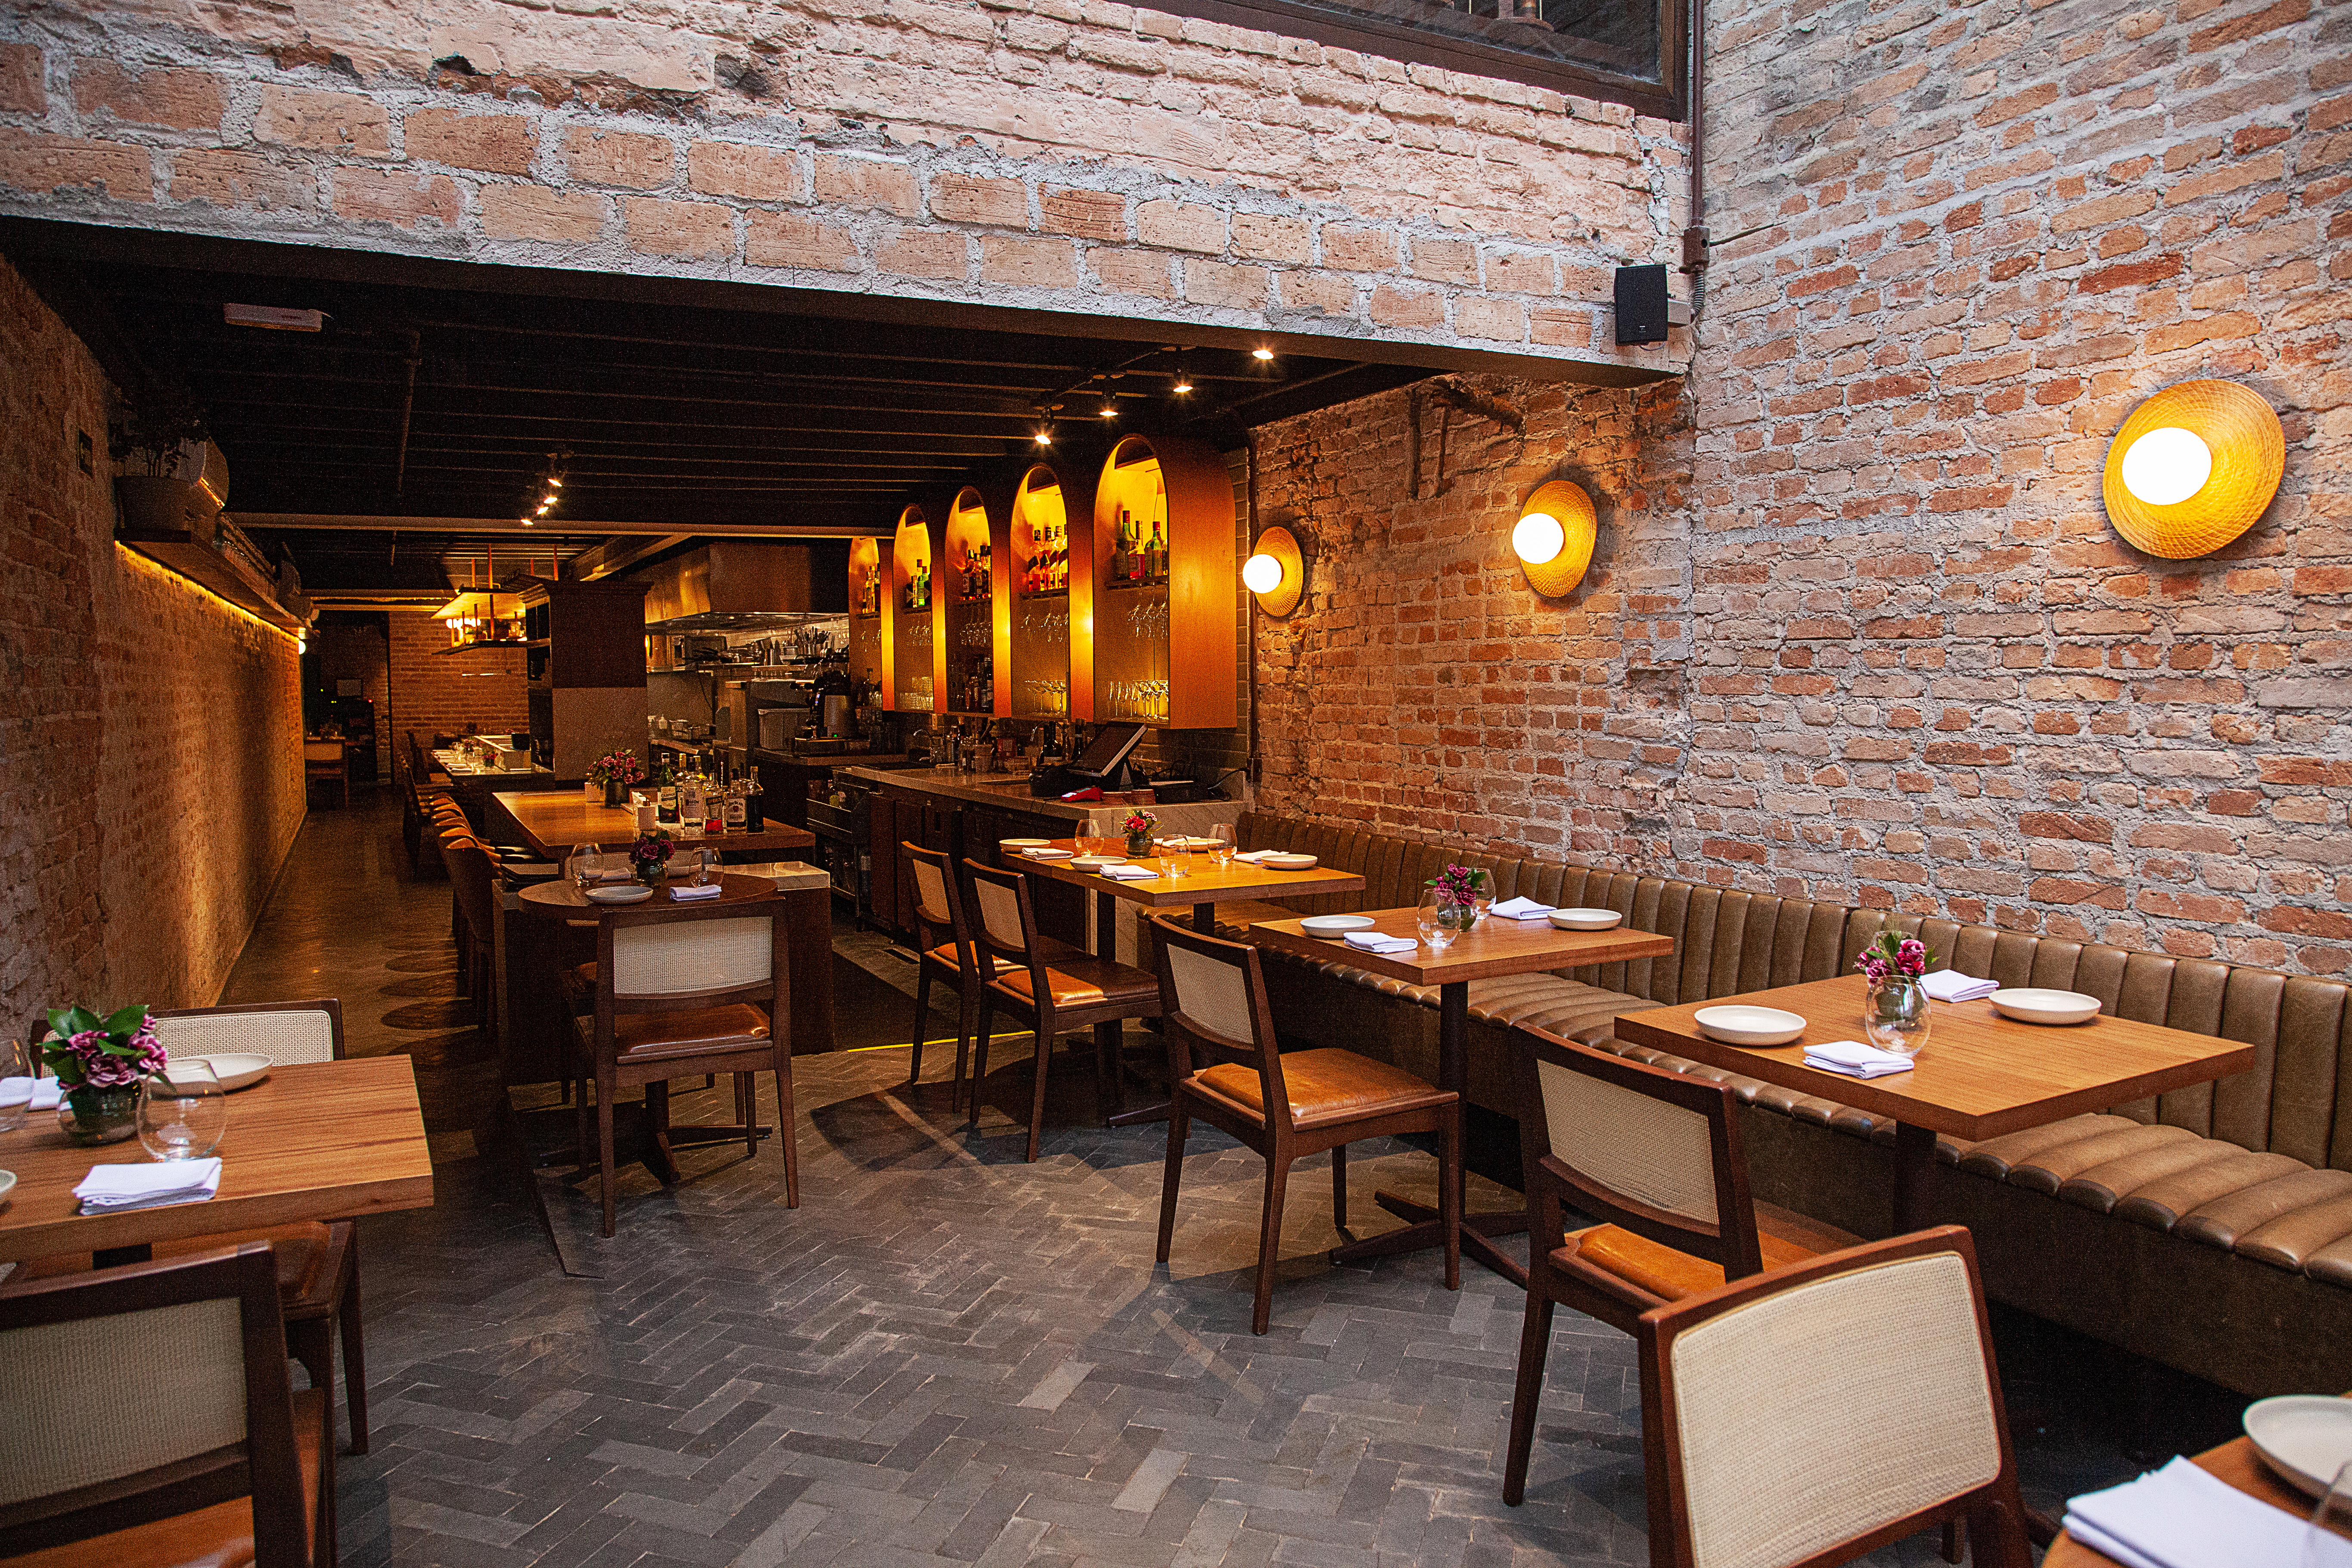 Salão do restaurante Nelita, com paredes de tijolinhos, mesas de madeira que se estendem até o fundo na lateral esquerda.